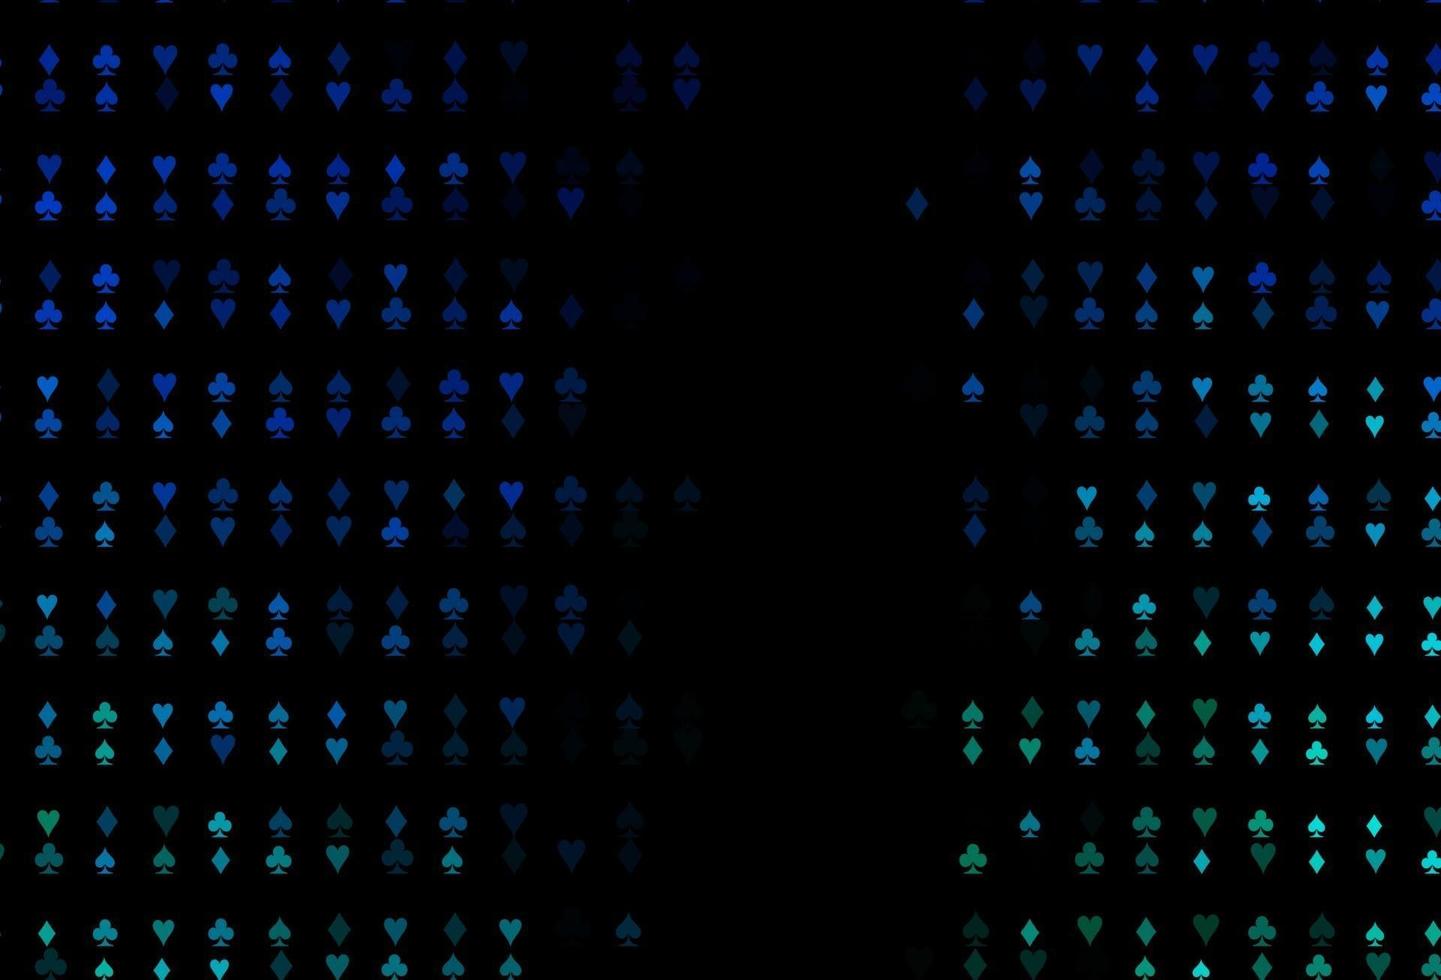 padrão de vetor azul escuro, verde com símbolo de cartas.